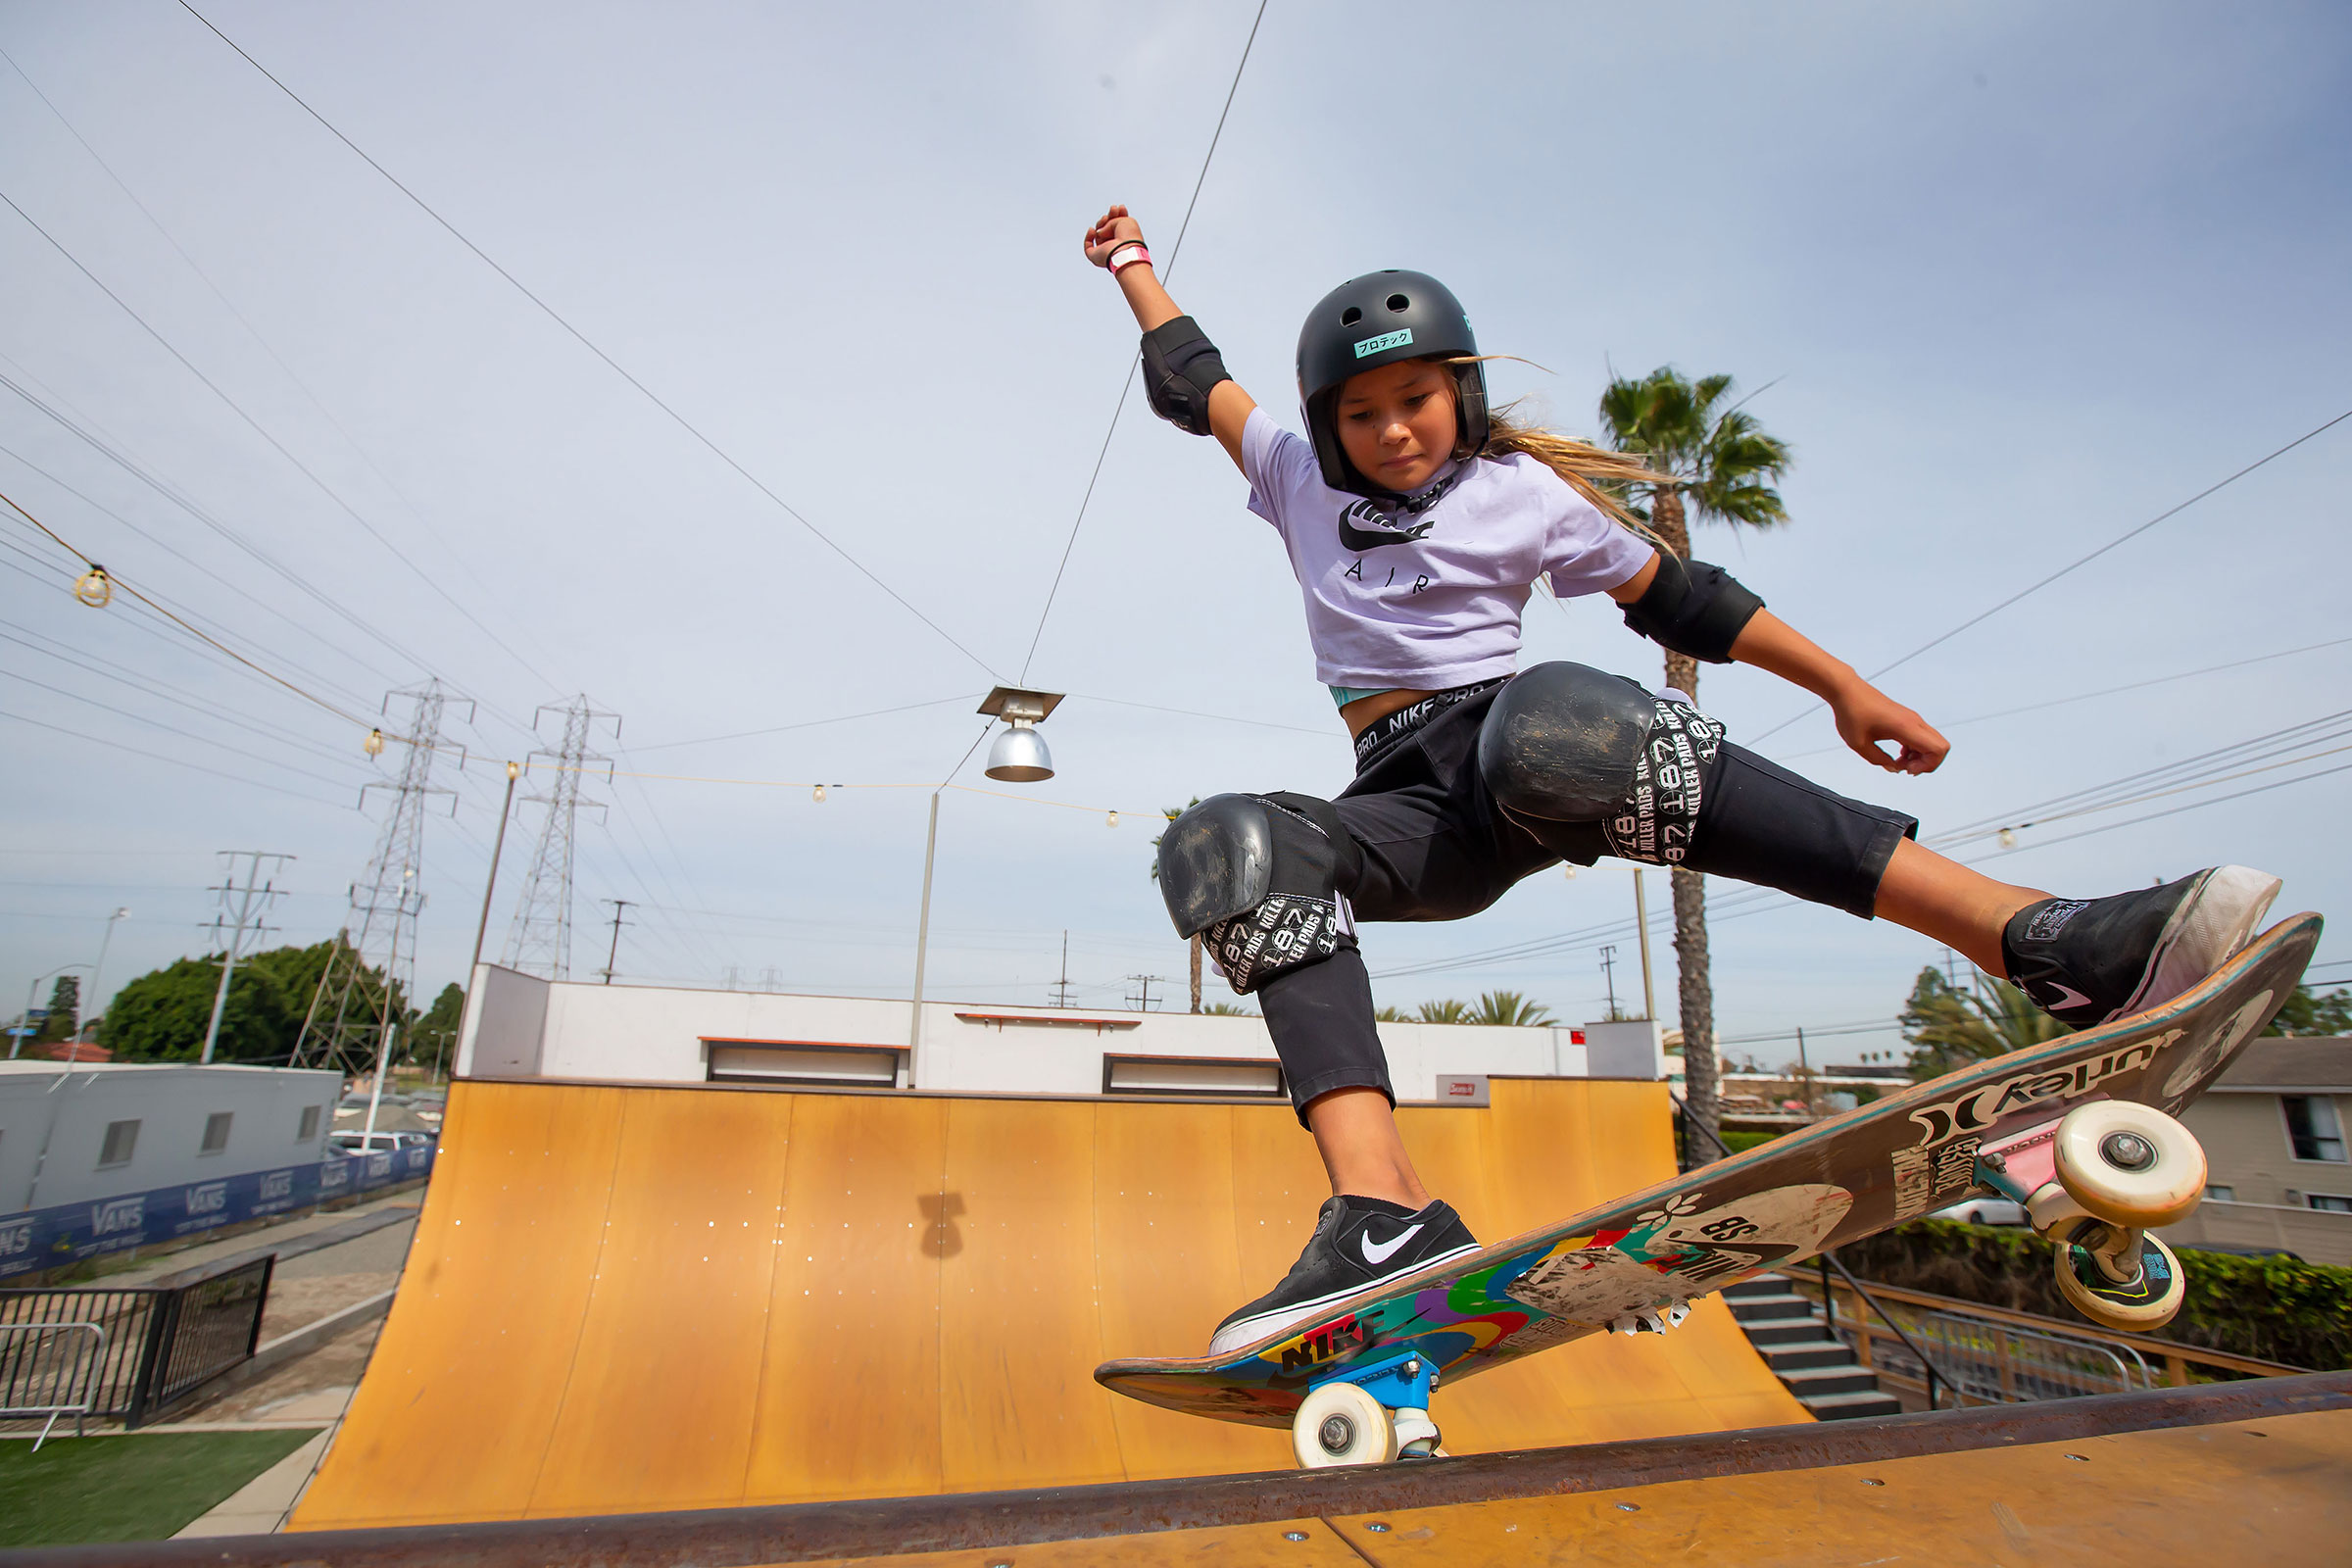 Sky Brown at Vans Off The Wall Huntington Beach skatepark in 2020 in Los Angeles, California. (Guardian/Eyevine/Redux)